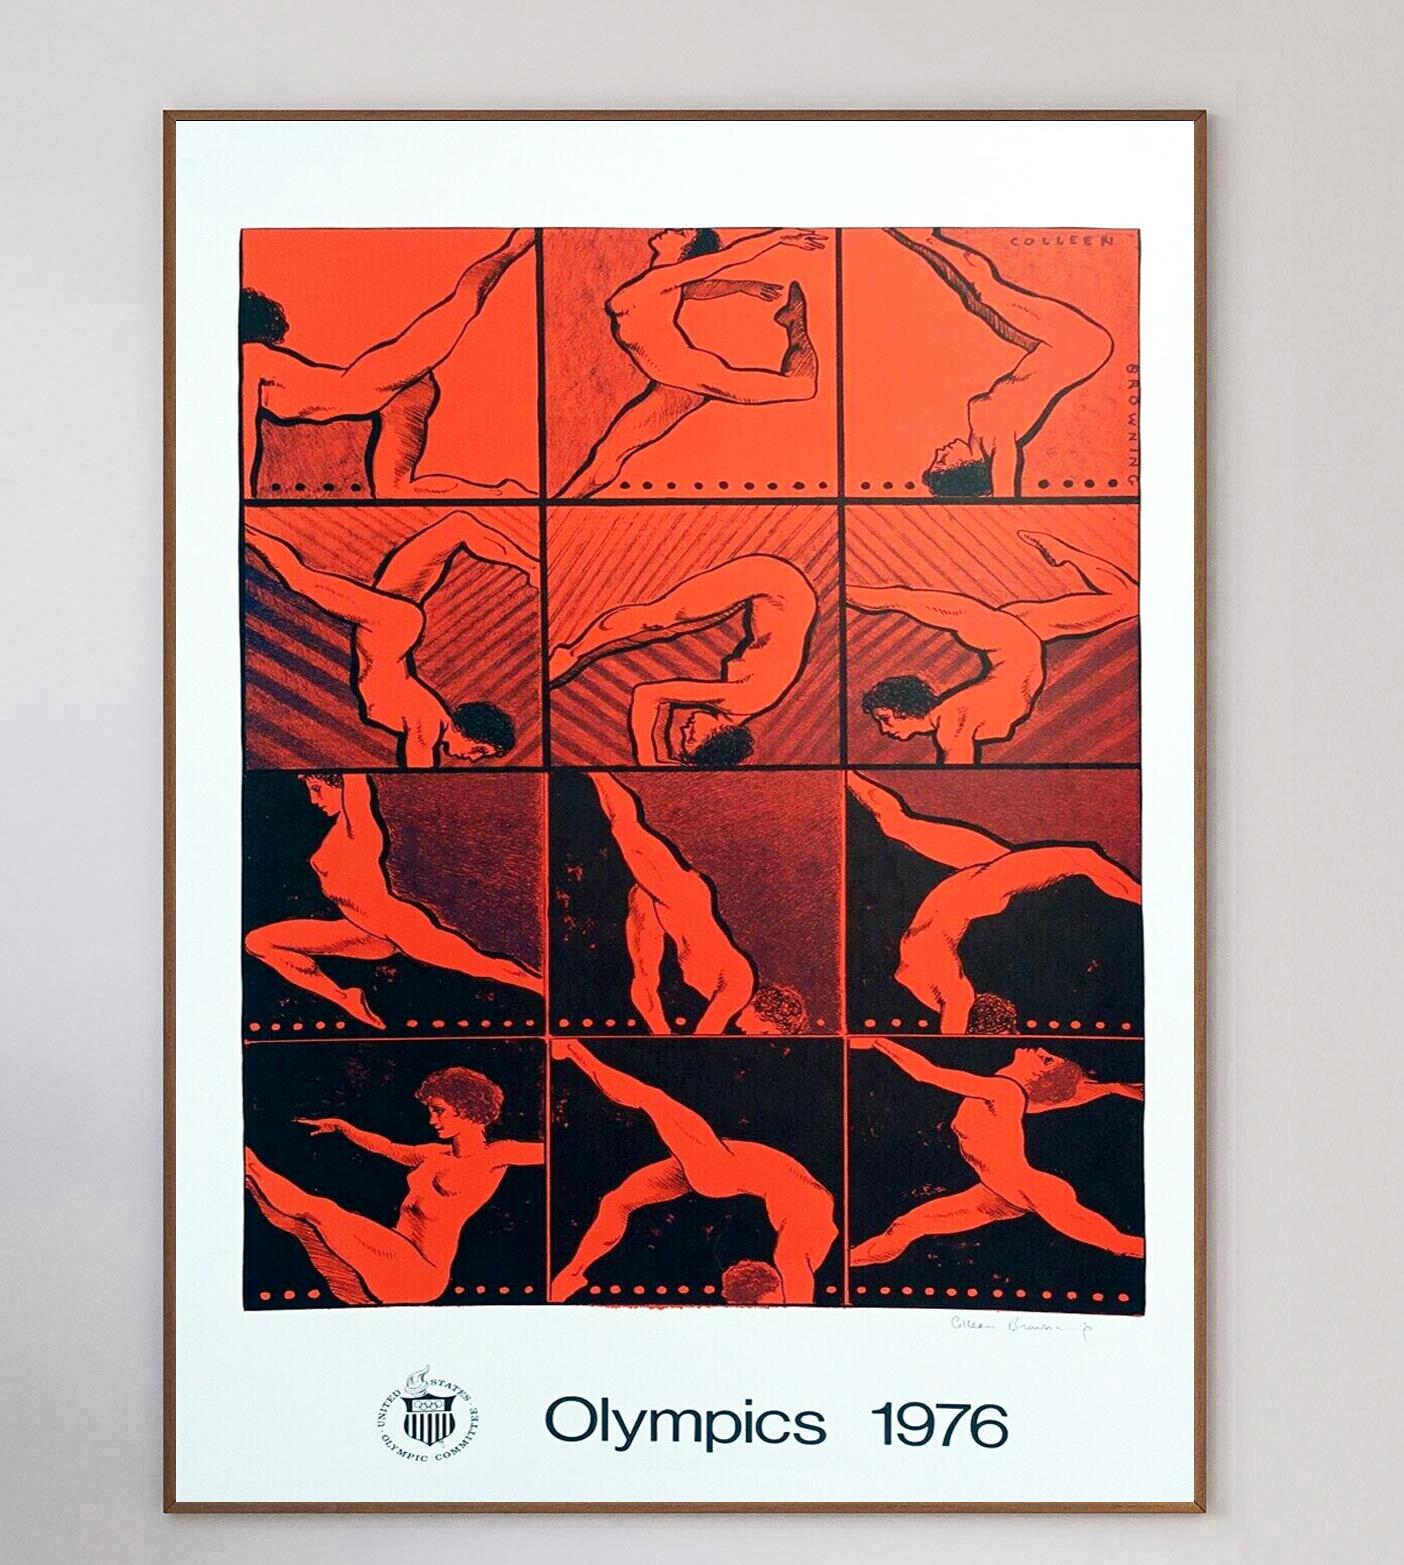 Die englisch-amerikanische Malerin Colleen Browning war eine von mehreren Künstlern, die mit der Gestaltung von Kunstpostern für die Olympischen Sommerspiele 1976 in Montreal beauftragt wurden. Die Spiele, die ersten und einzigen Sommerspiele, die